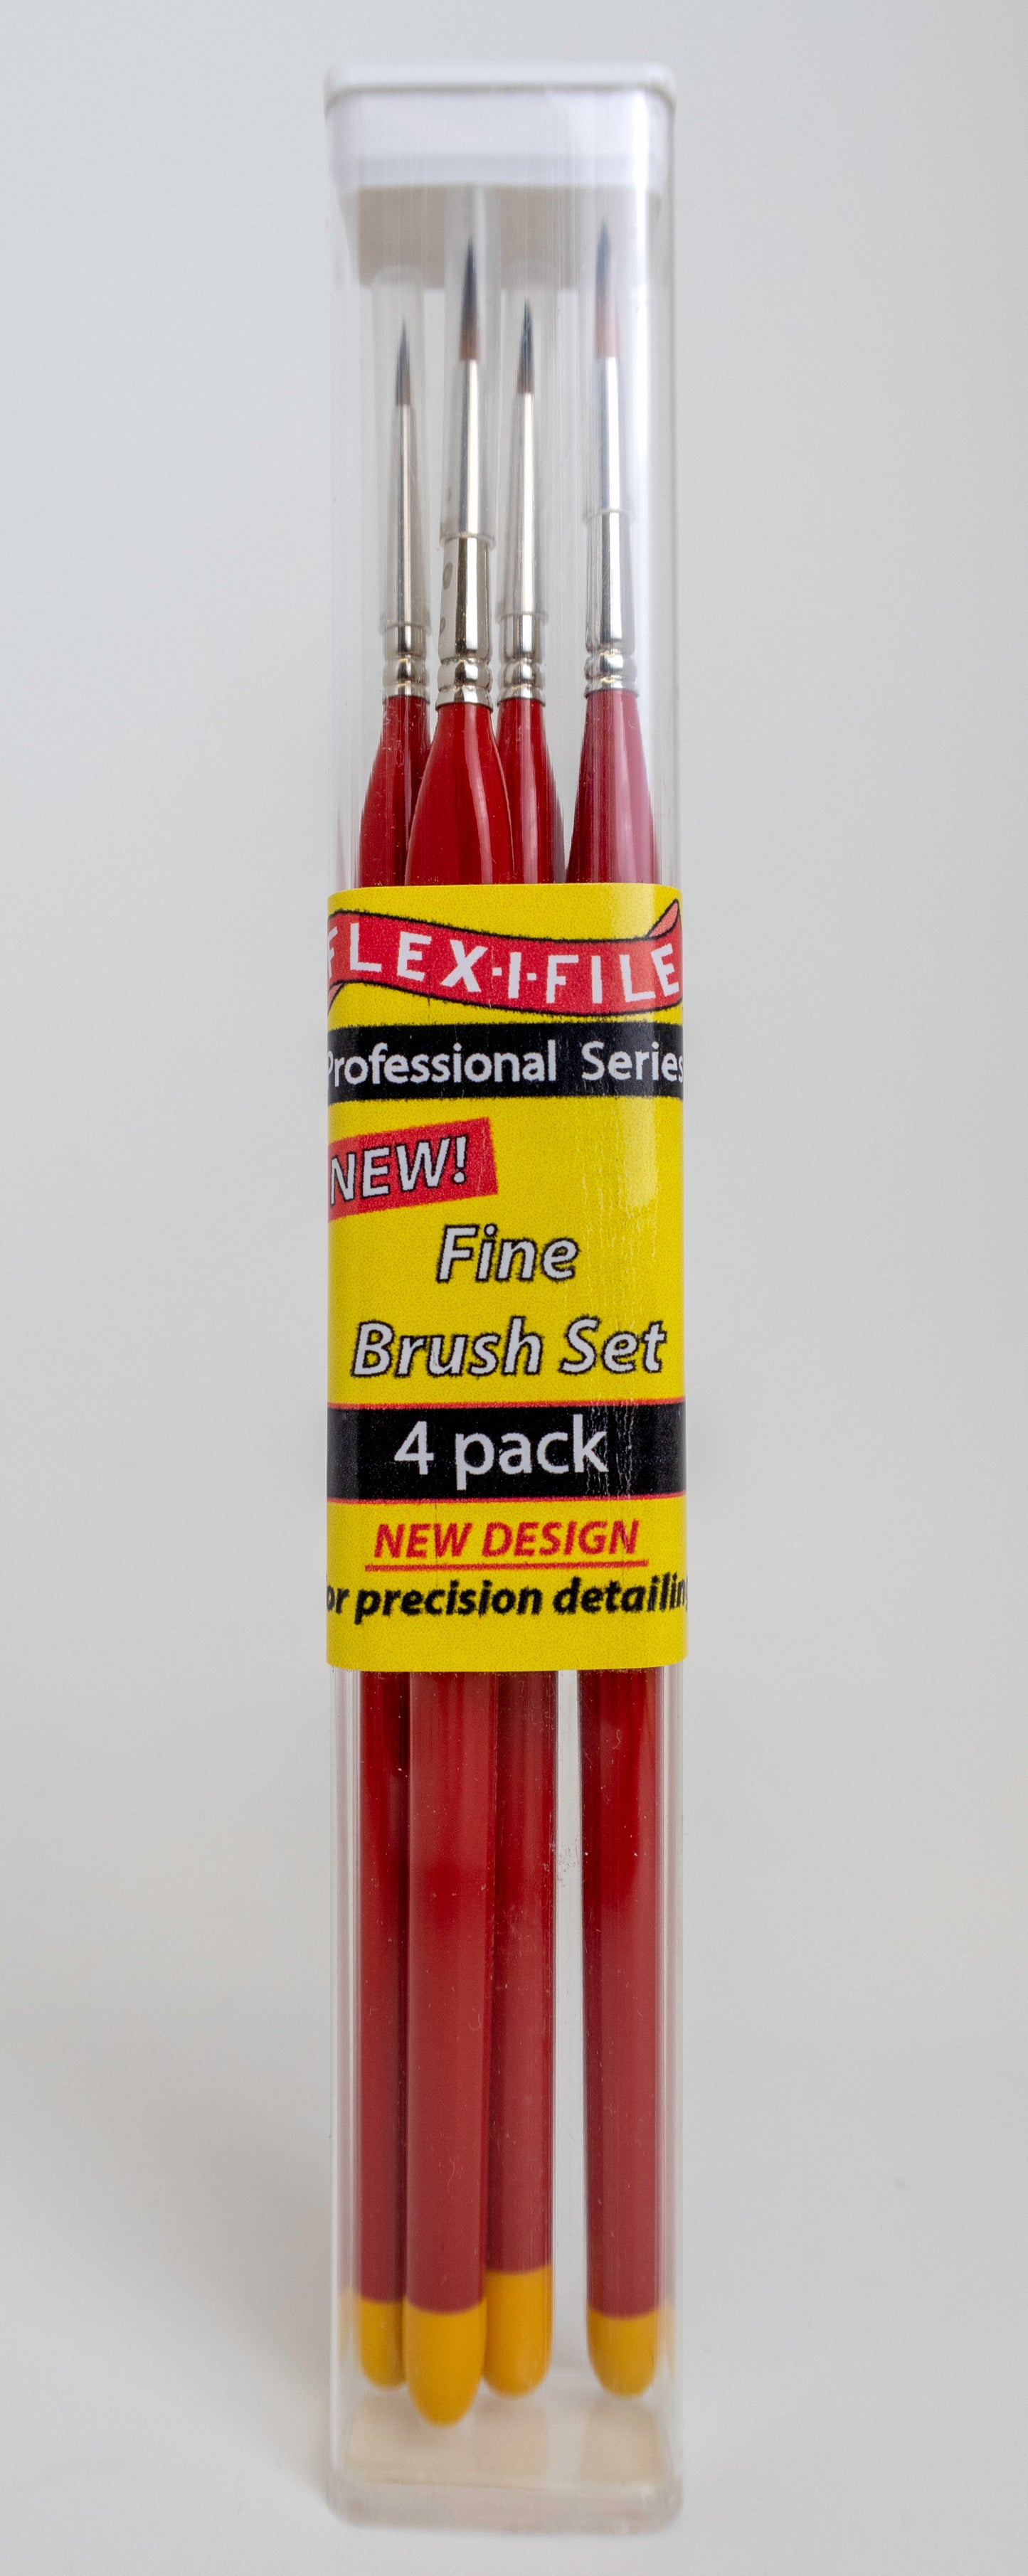 Flex-I-File Brand Brushes